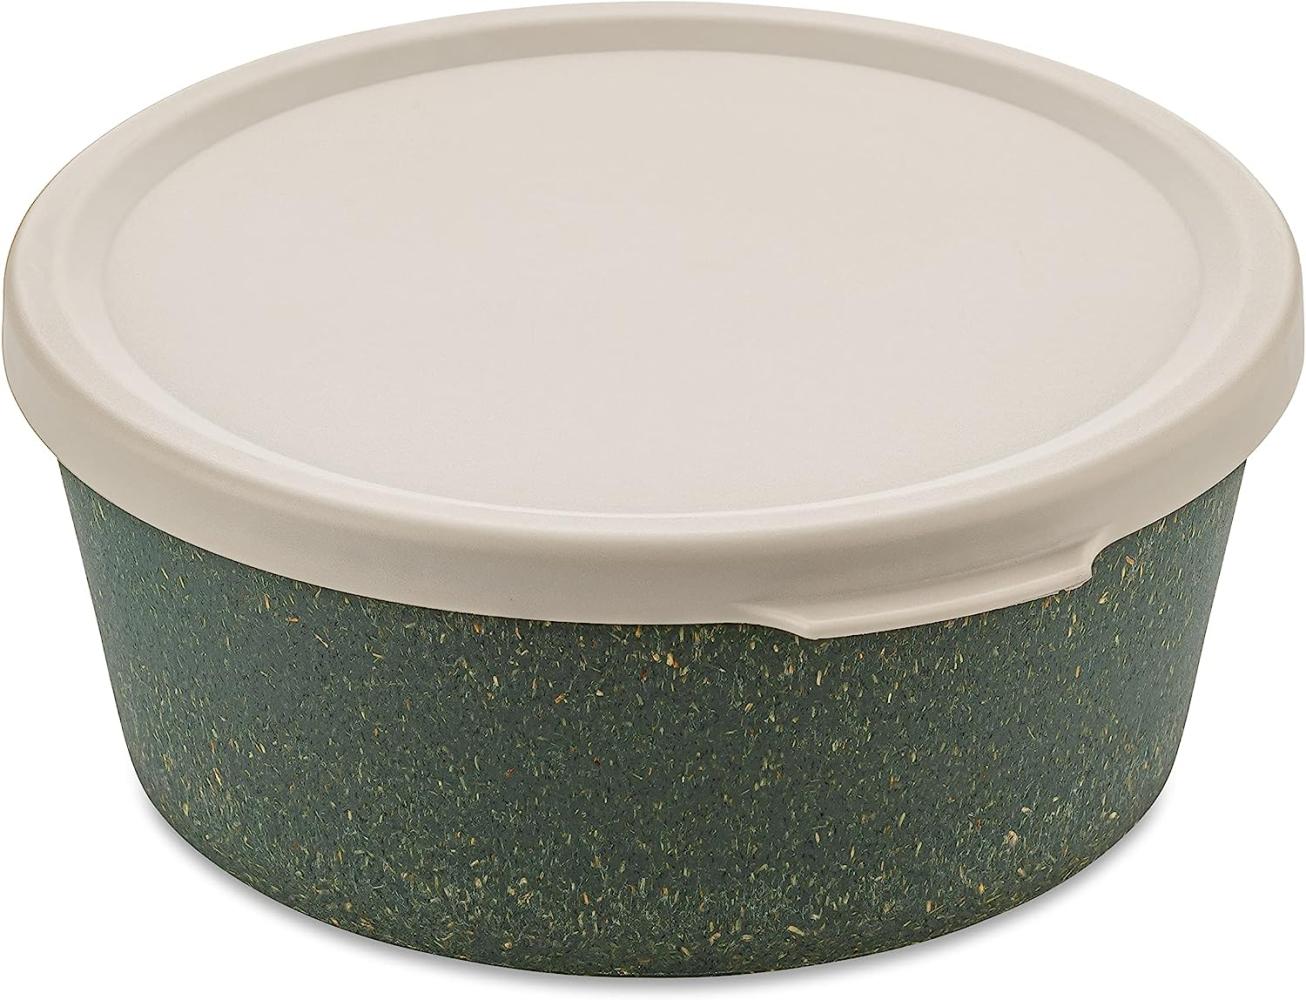 Koziol Schale Connect Bowl Mit Deckel, Schüssel, Kunststoff-Holz-Mix, Nature Ash Grey, 890 ml, 7271701 Bild 1